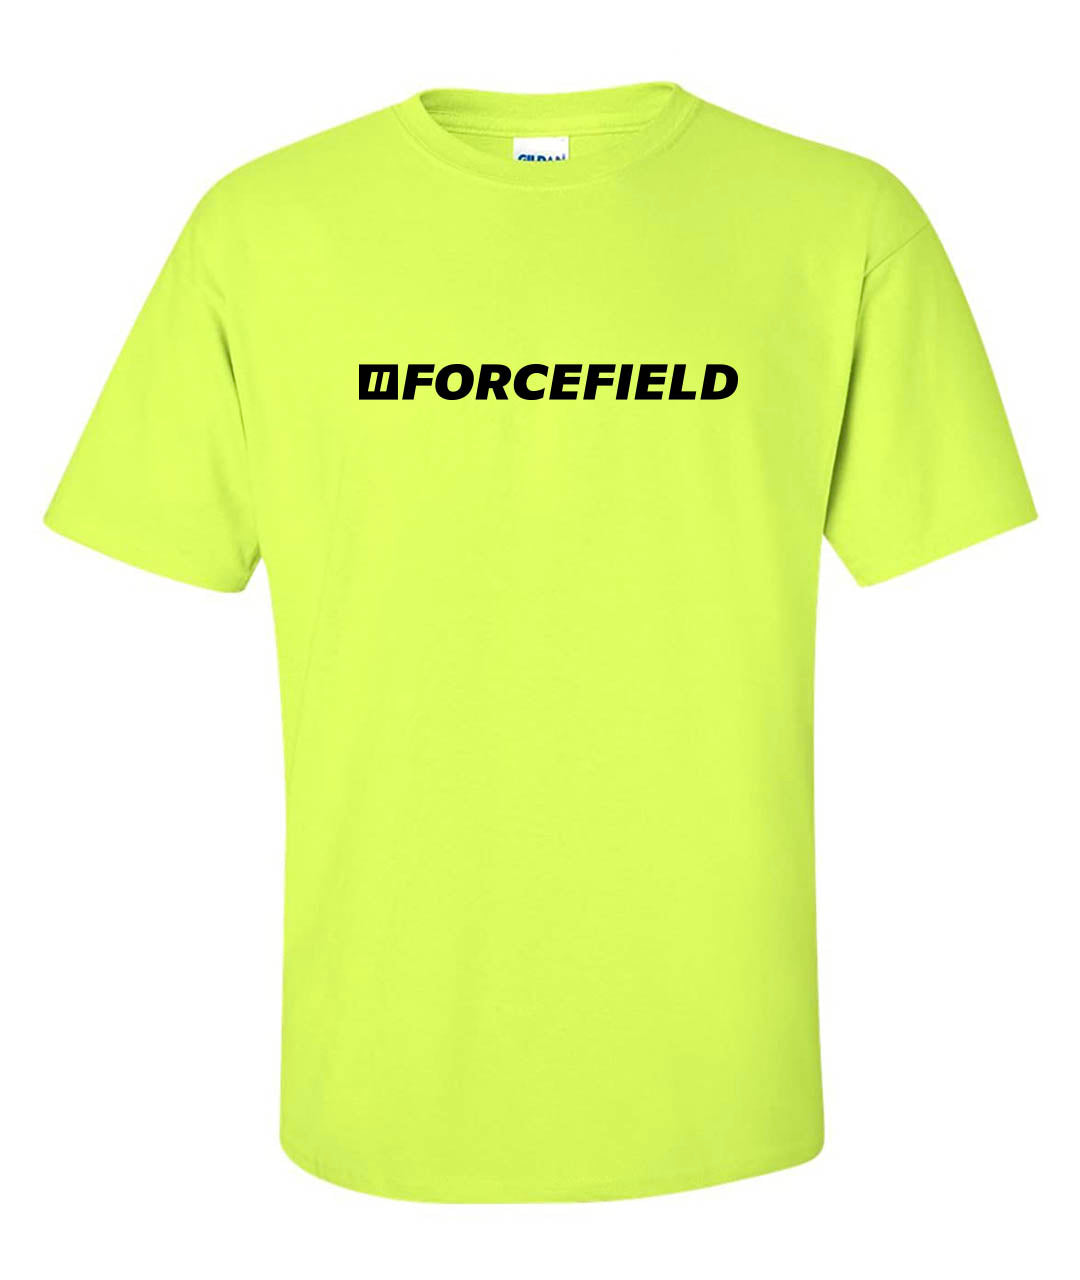 T-shirt graphique léger à manches courtes et col rond avec logo Forcefield réfléchissant vert lime haute visibilité